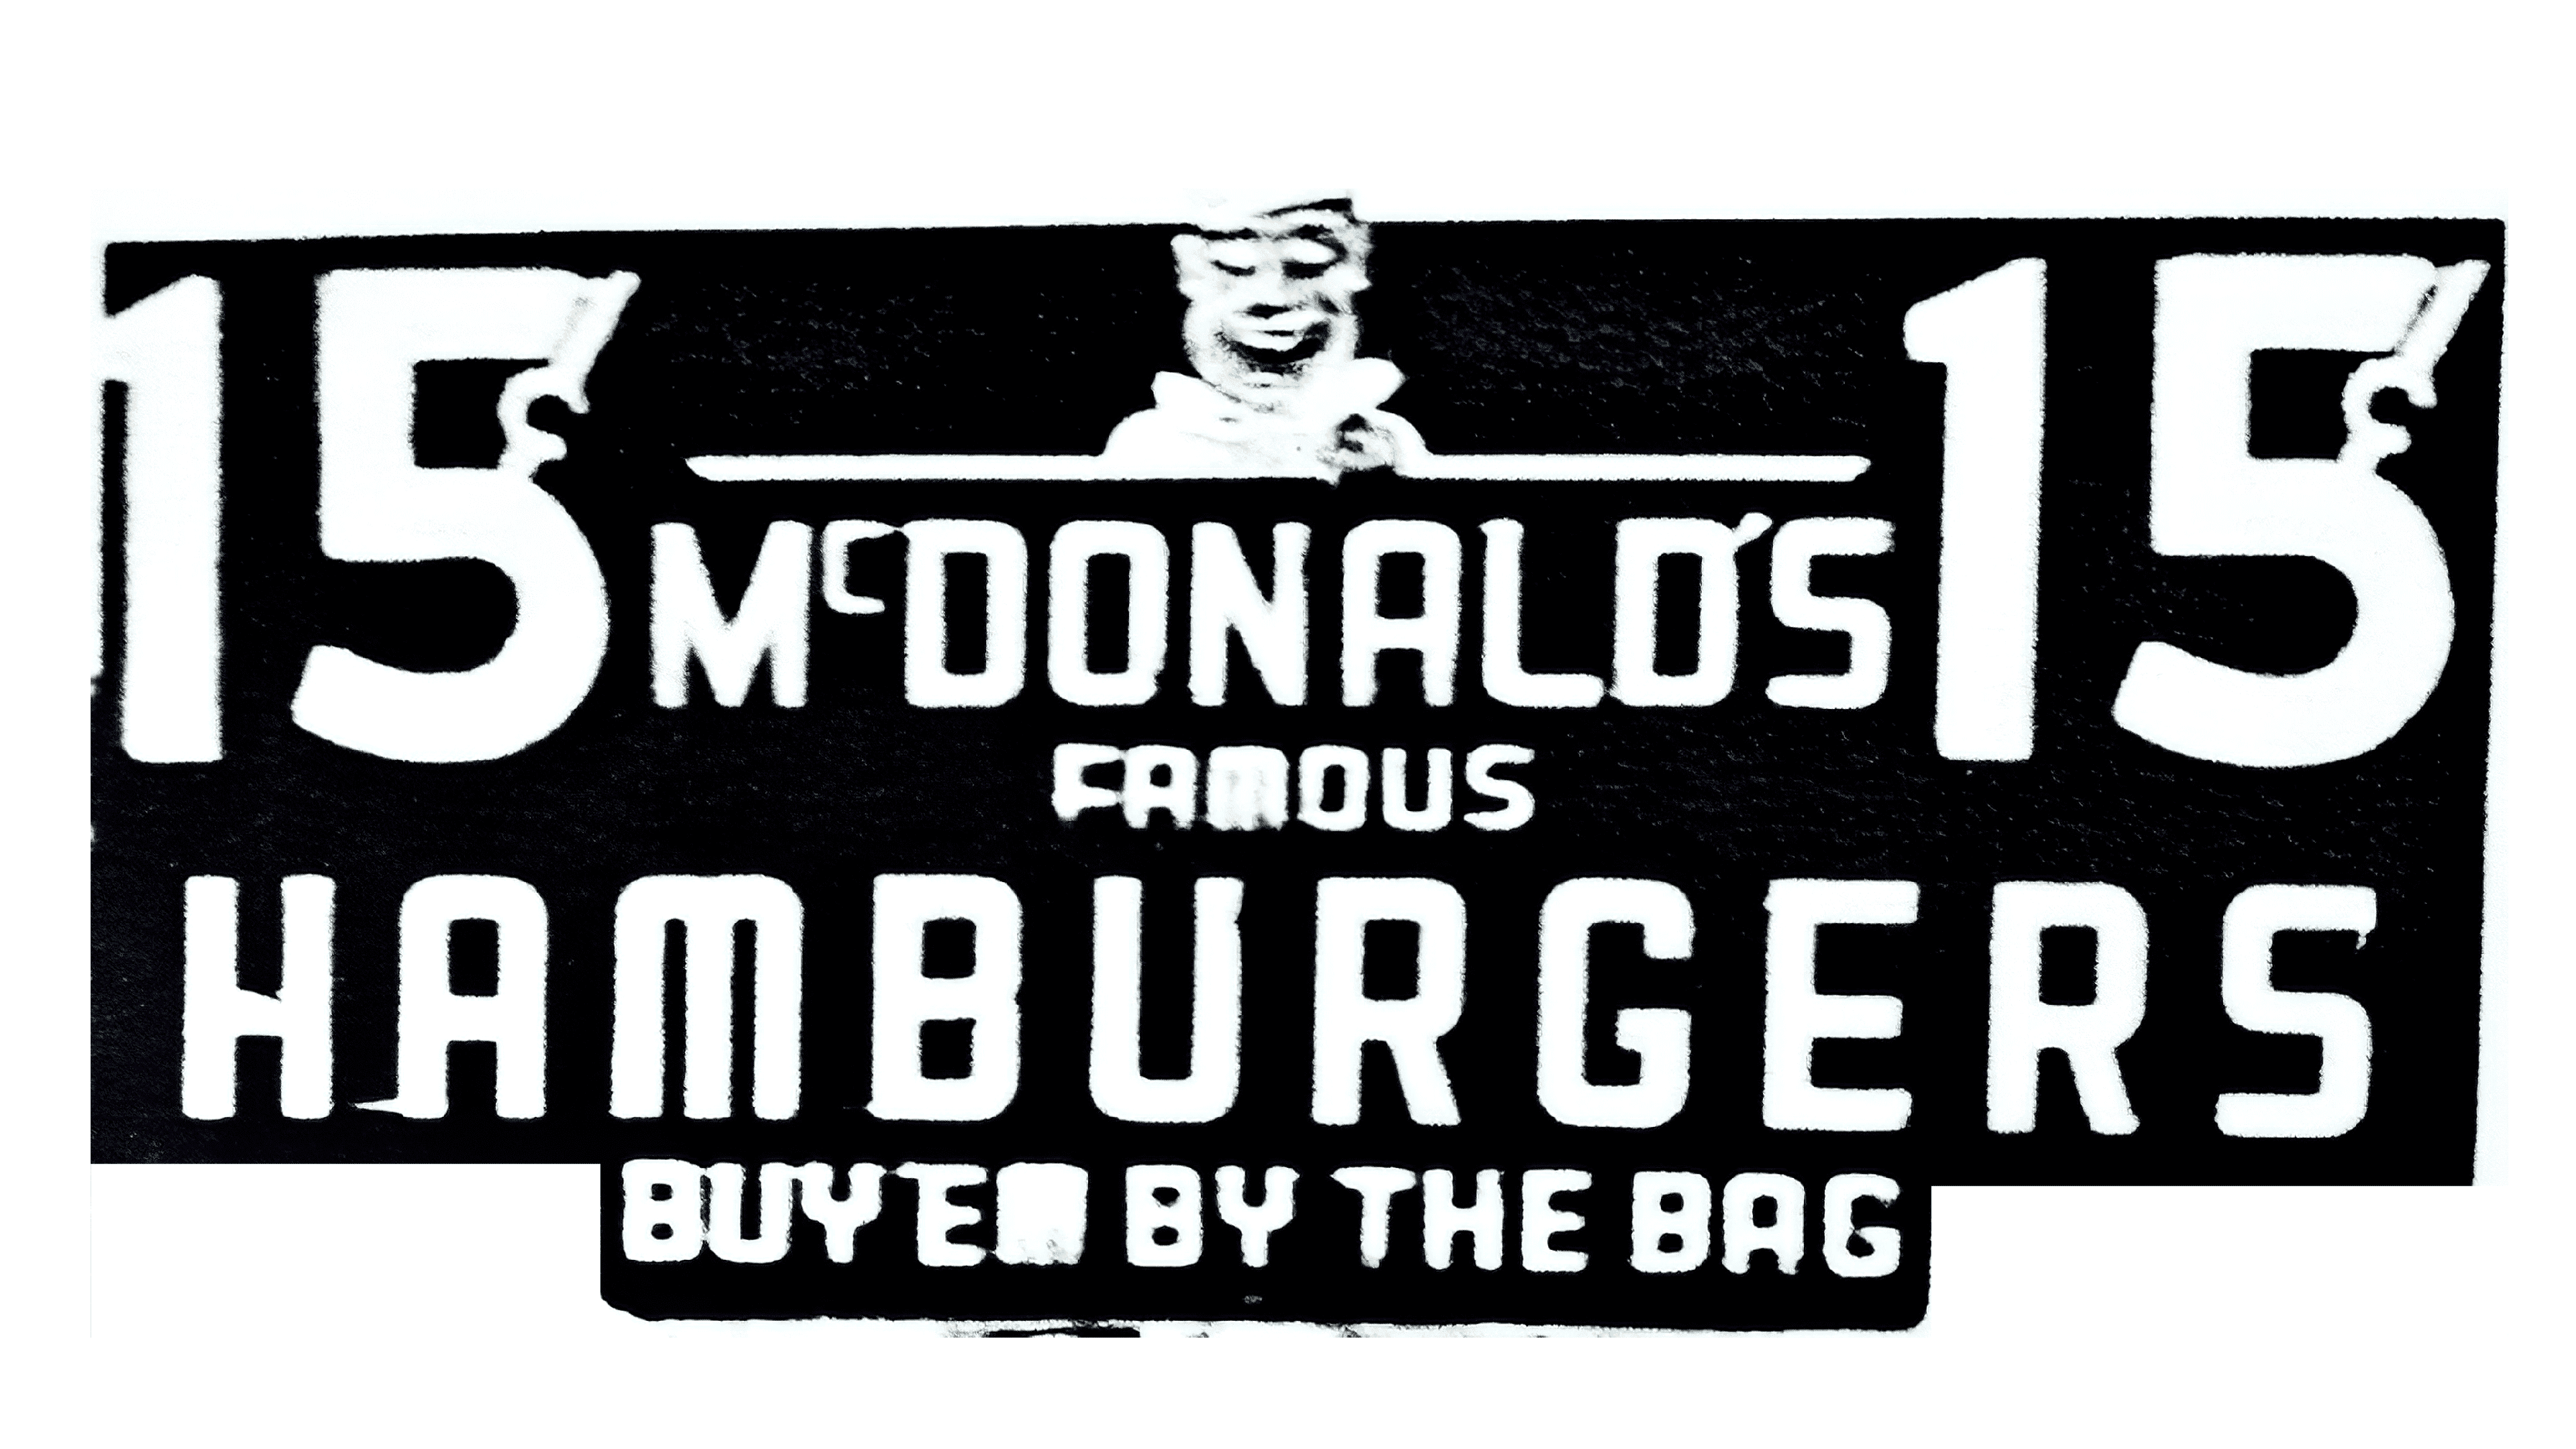 Mc Donald logo 1948